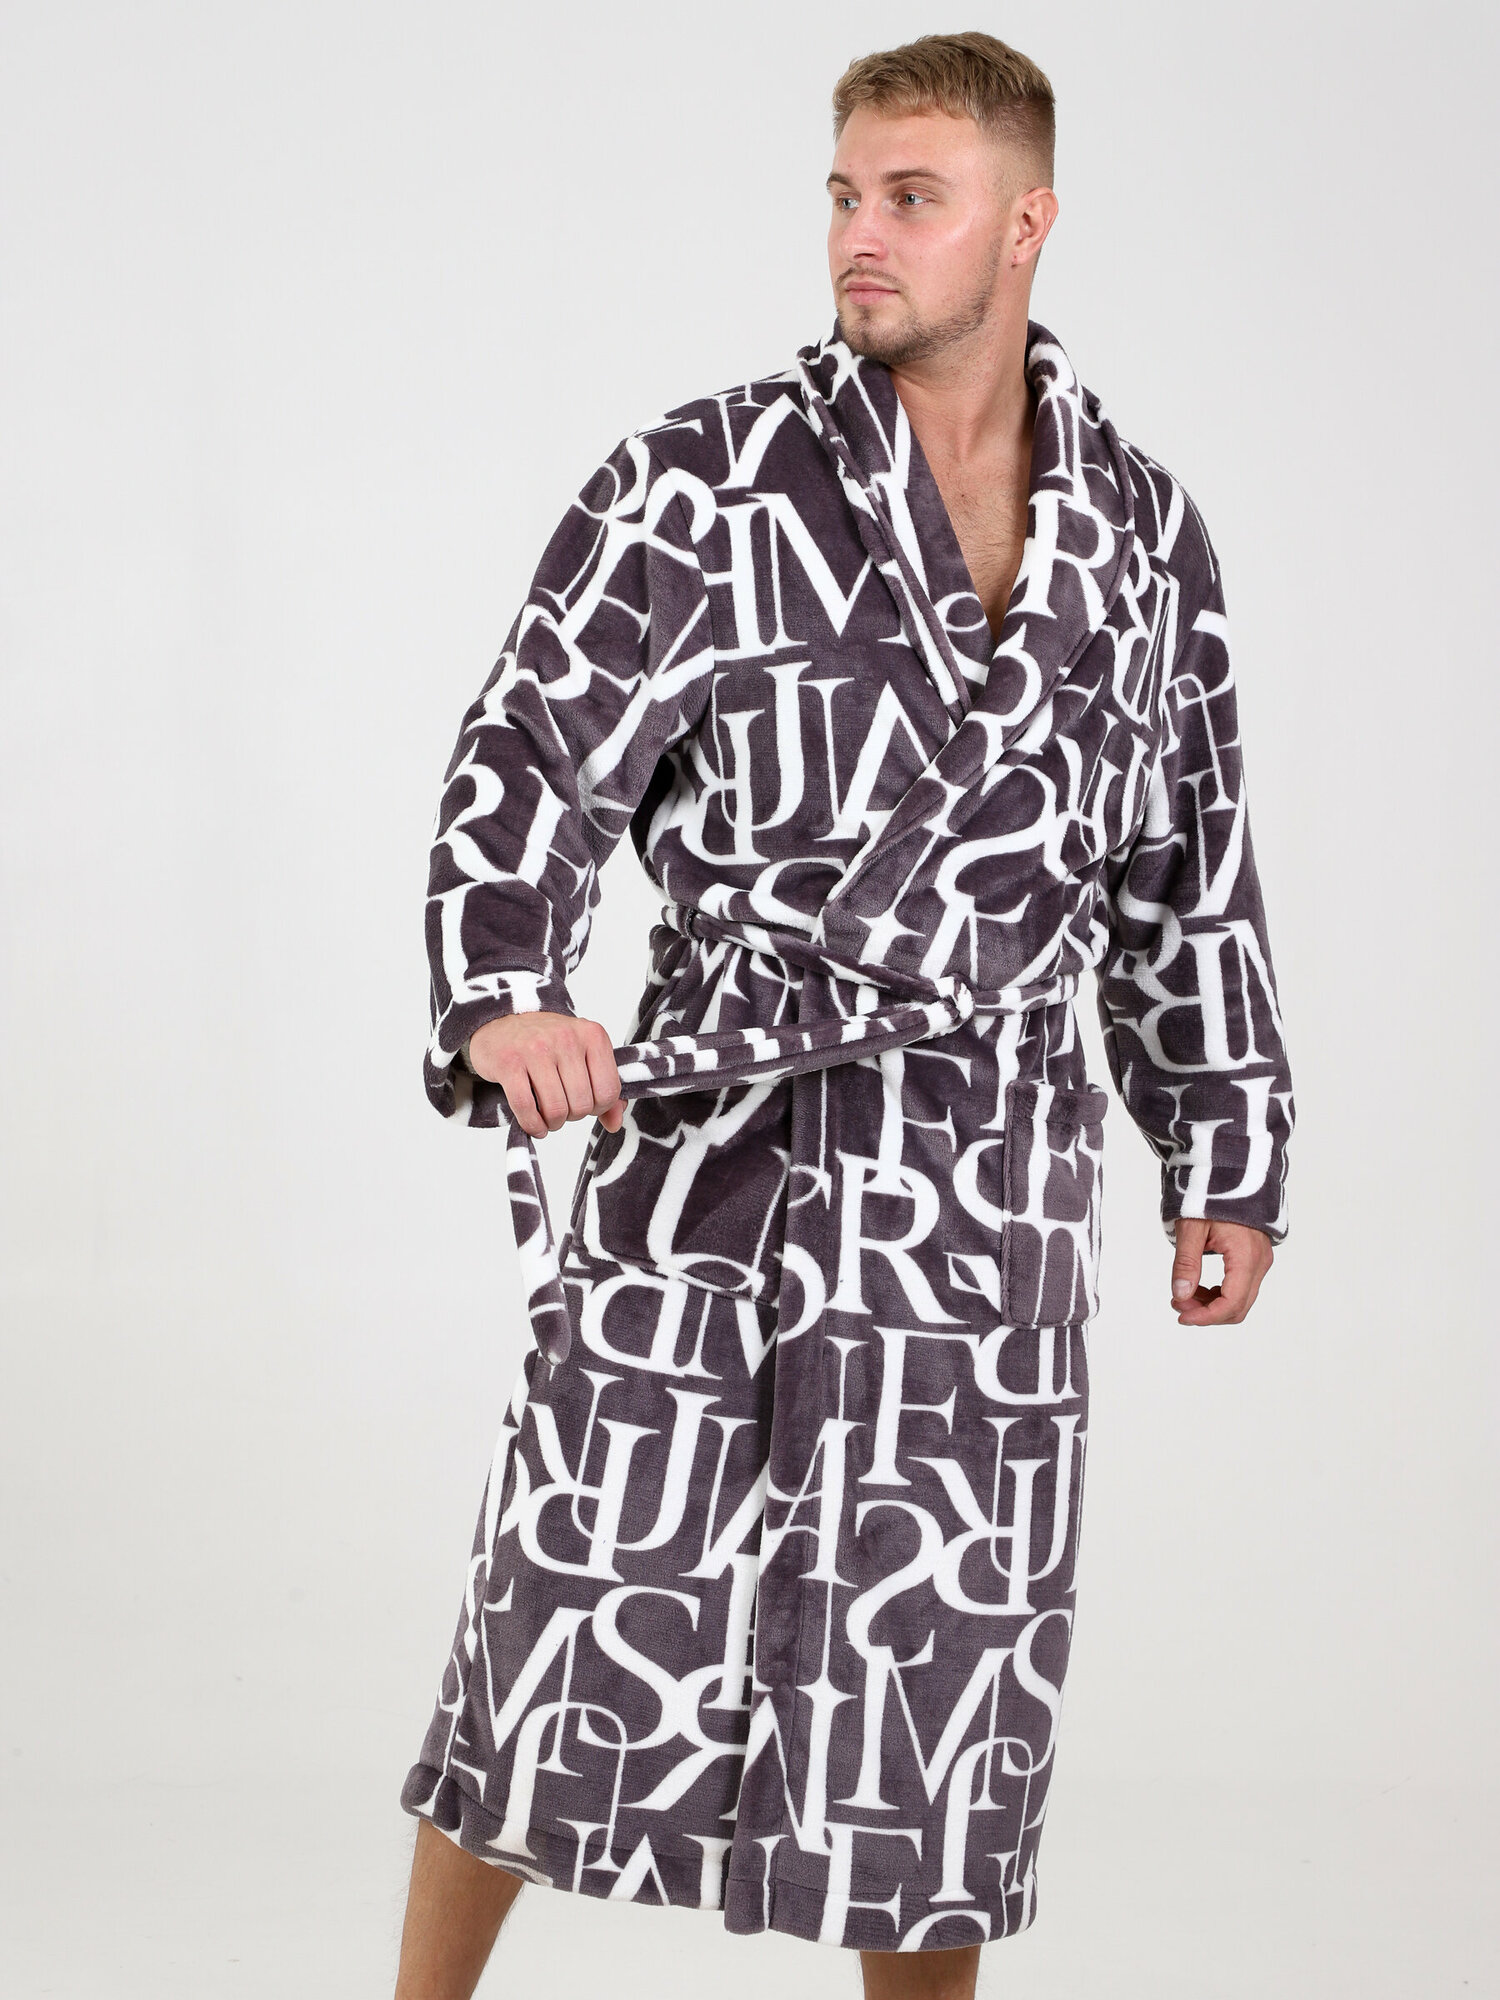 Халат IvCapriz, длинный рукав, пояс/ремень, утепленная, карманы, трикотажная, банный халат, размер 48, белый, коричневый - фотография № 6